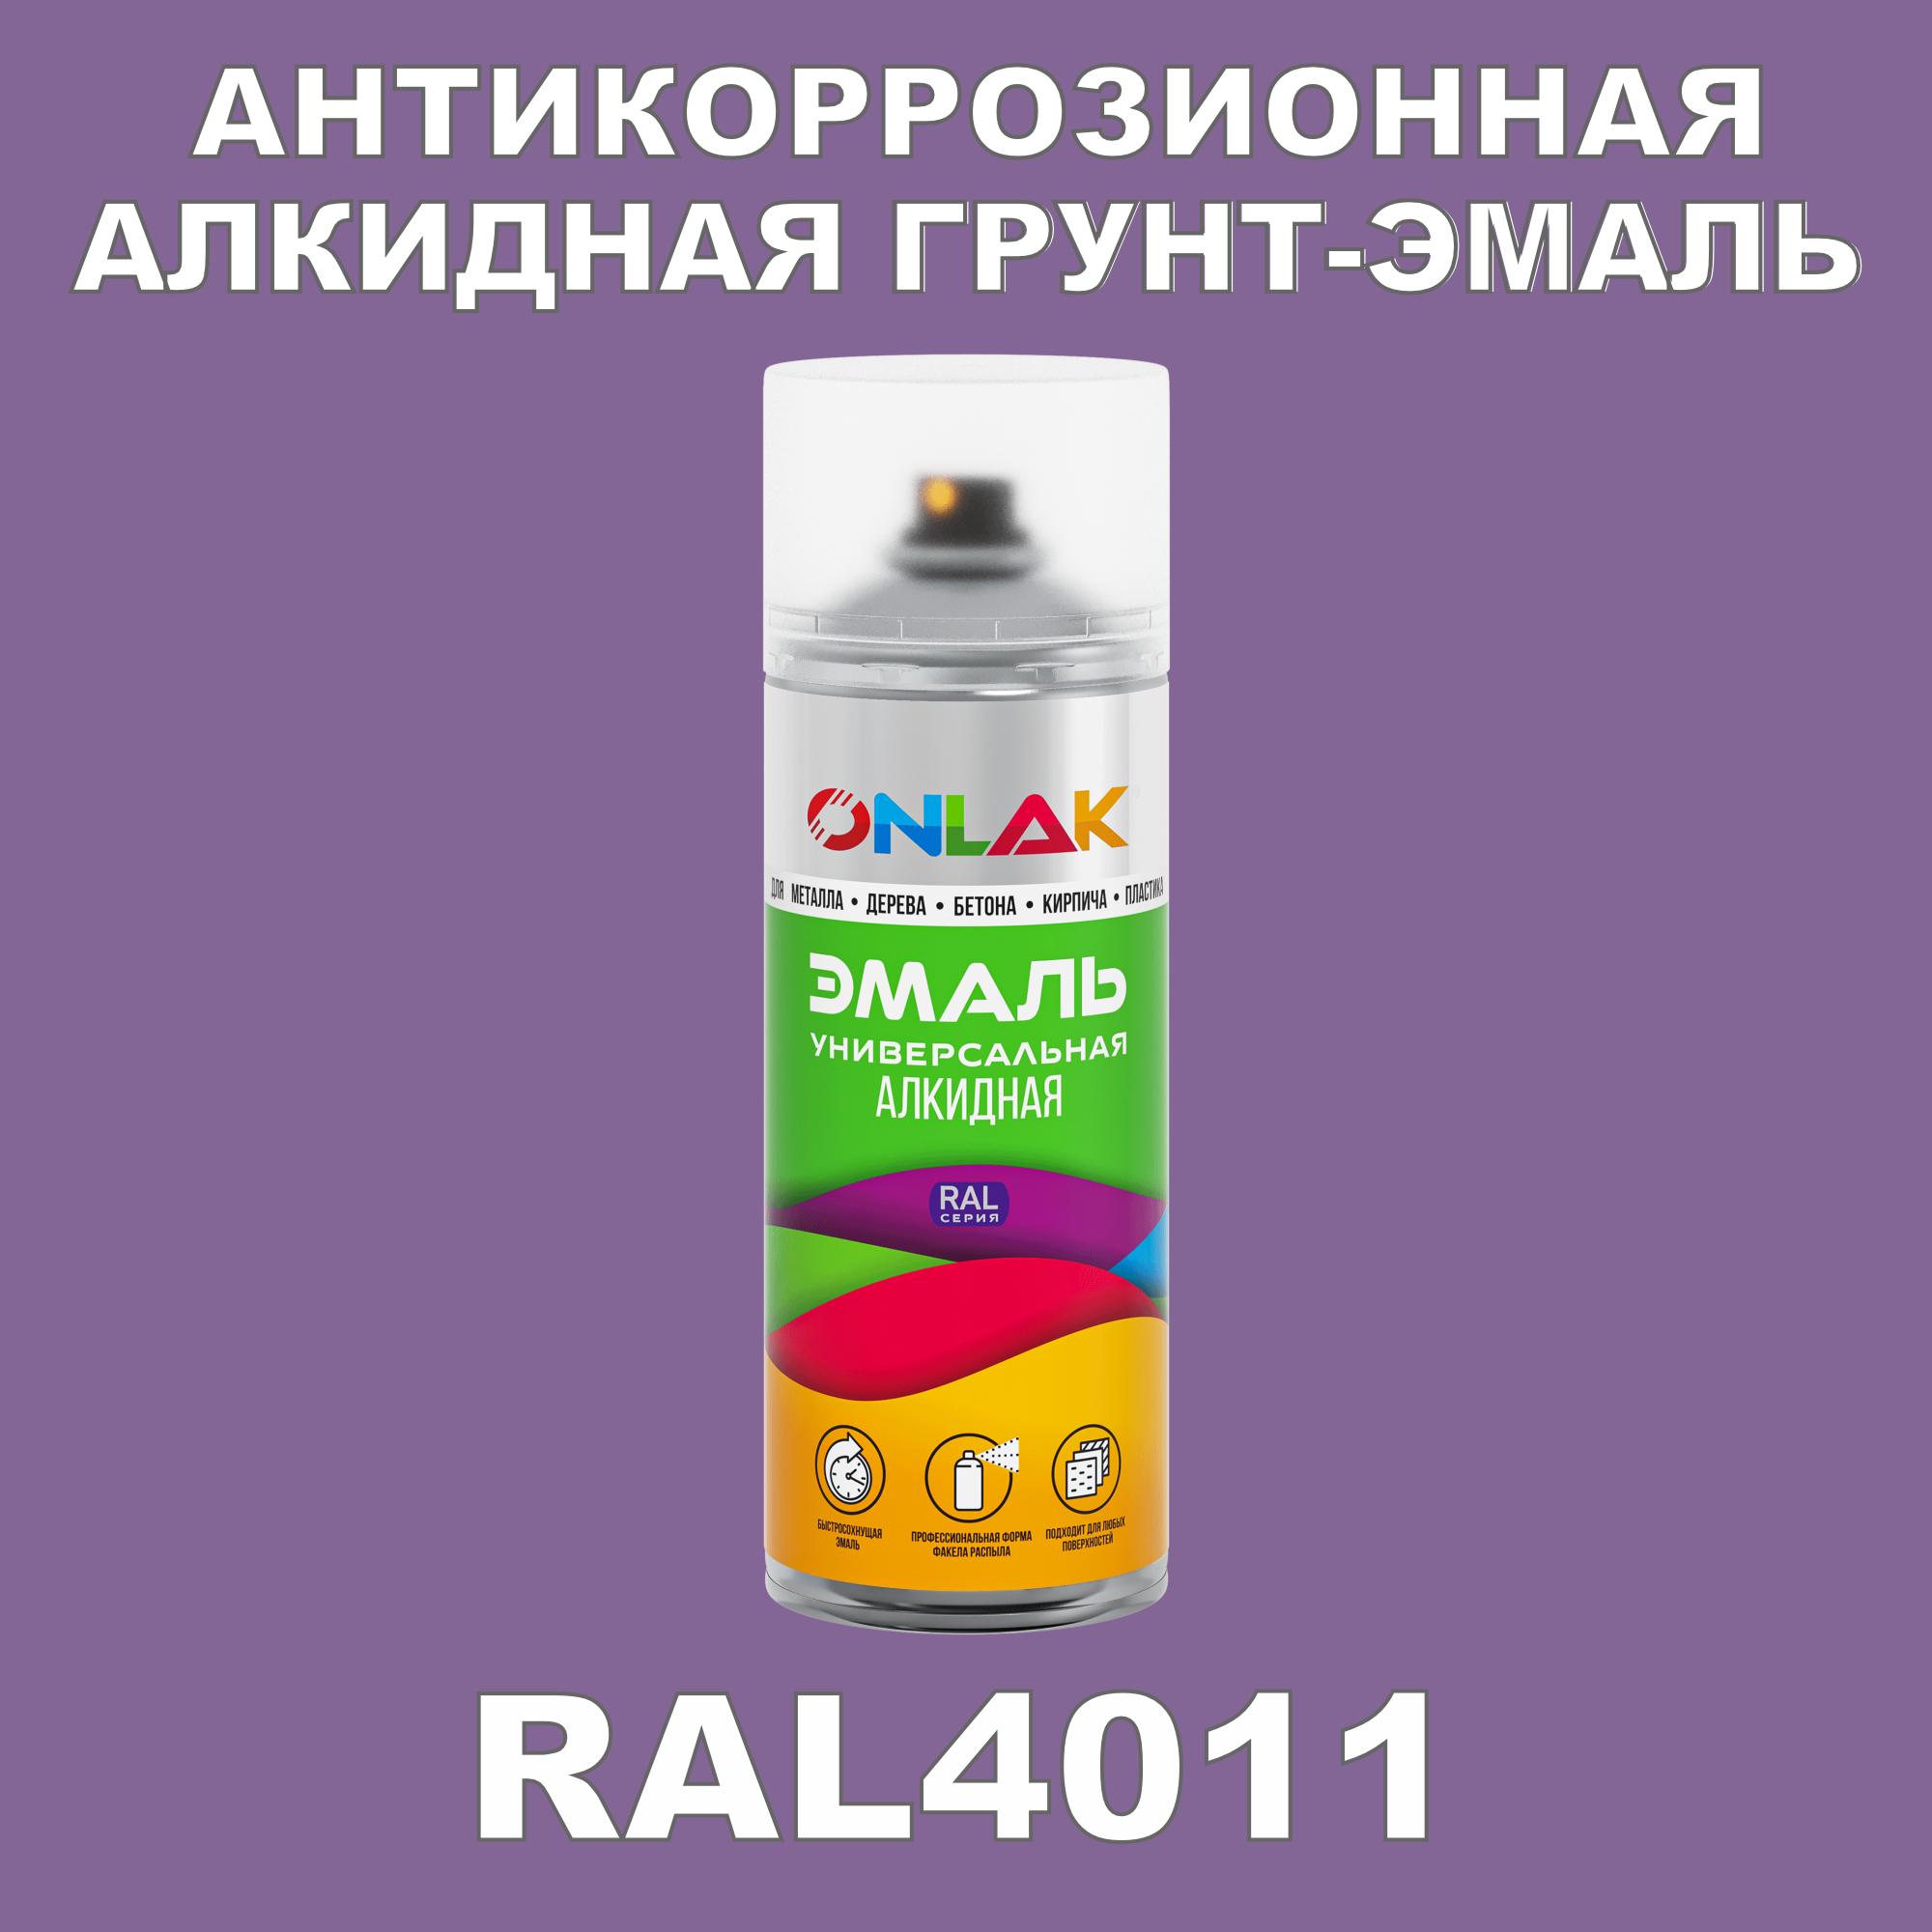 Антикоррозионная грунт-эмаль ONLAK RAL 4011,фиолетовый,550 мл artuniq color violet ной грунт для аквариума фиолетовый 1 кг